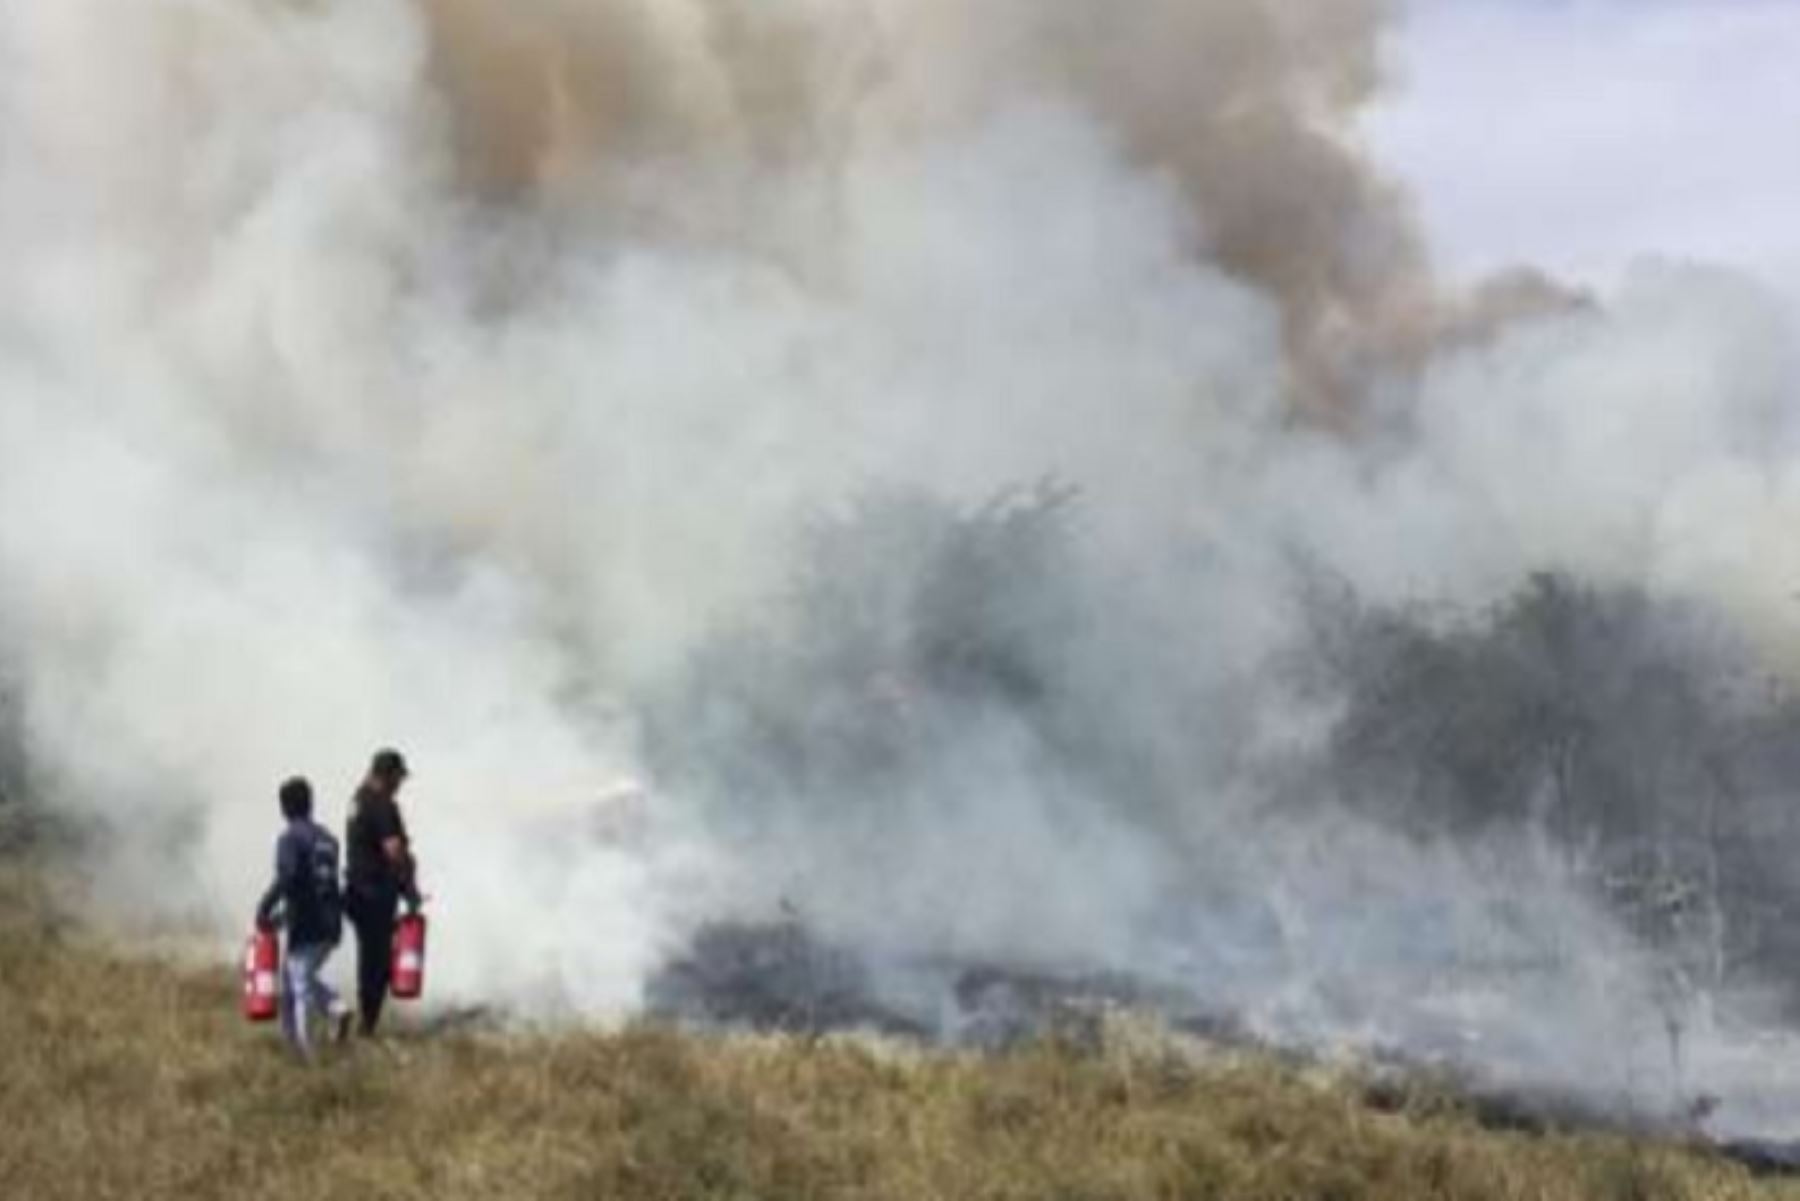 Personal de la Compañía de Bomberos N° 66 de Tumbes extinguió el incendio forestal que se inició en la víspera en el distrito de Zorritos, provincia de Contralmirante Villar. El fuego dejó 1.5 hectáreas de pastizales perdidos.